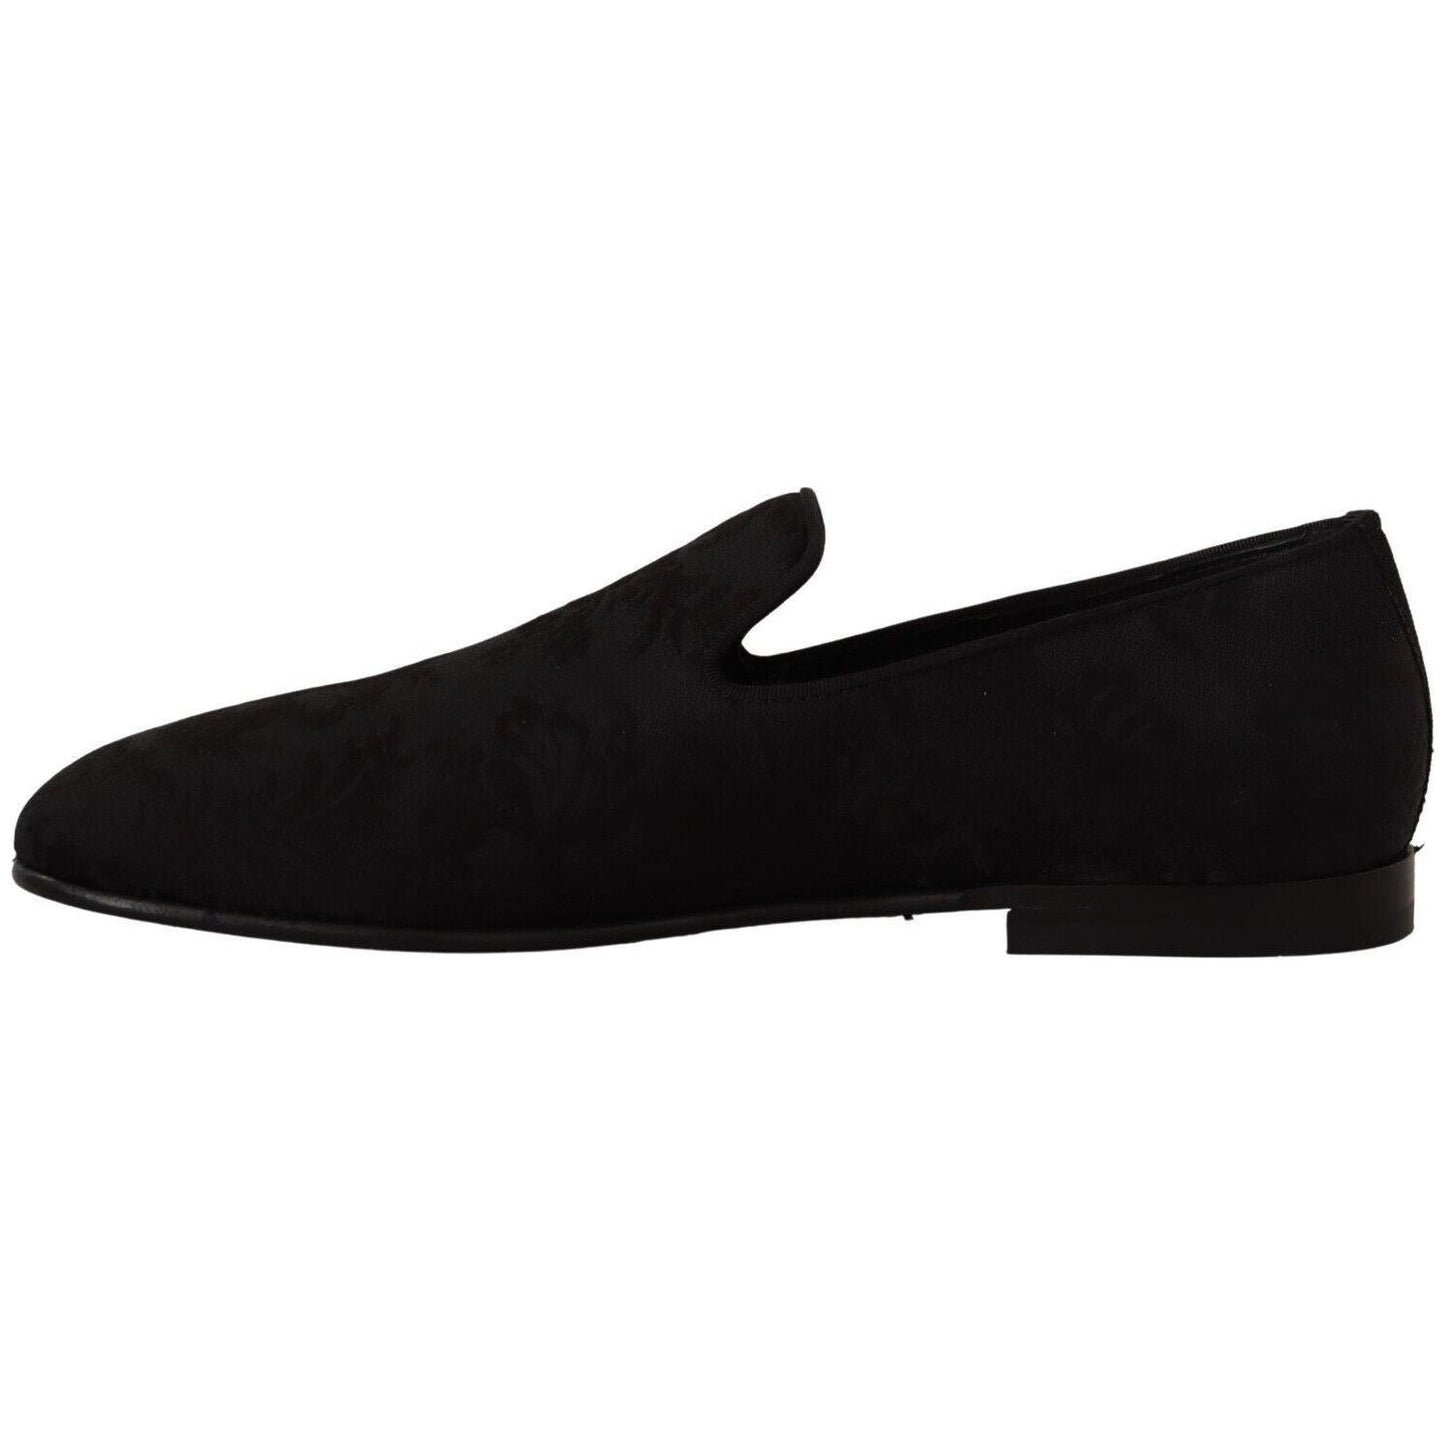 Dolce & Gabbana Elegant Jacquard Slide On Loafers Flats black-jacquard-slippers-flats-loafers-shoes